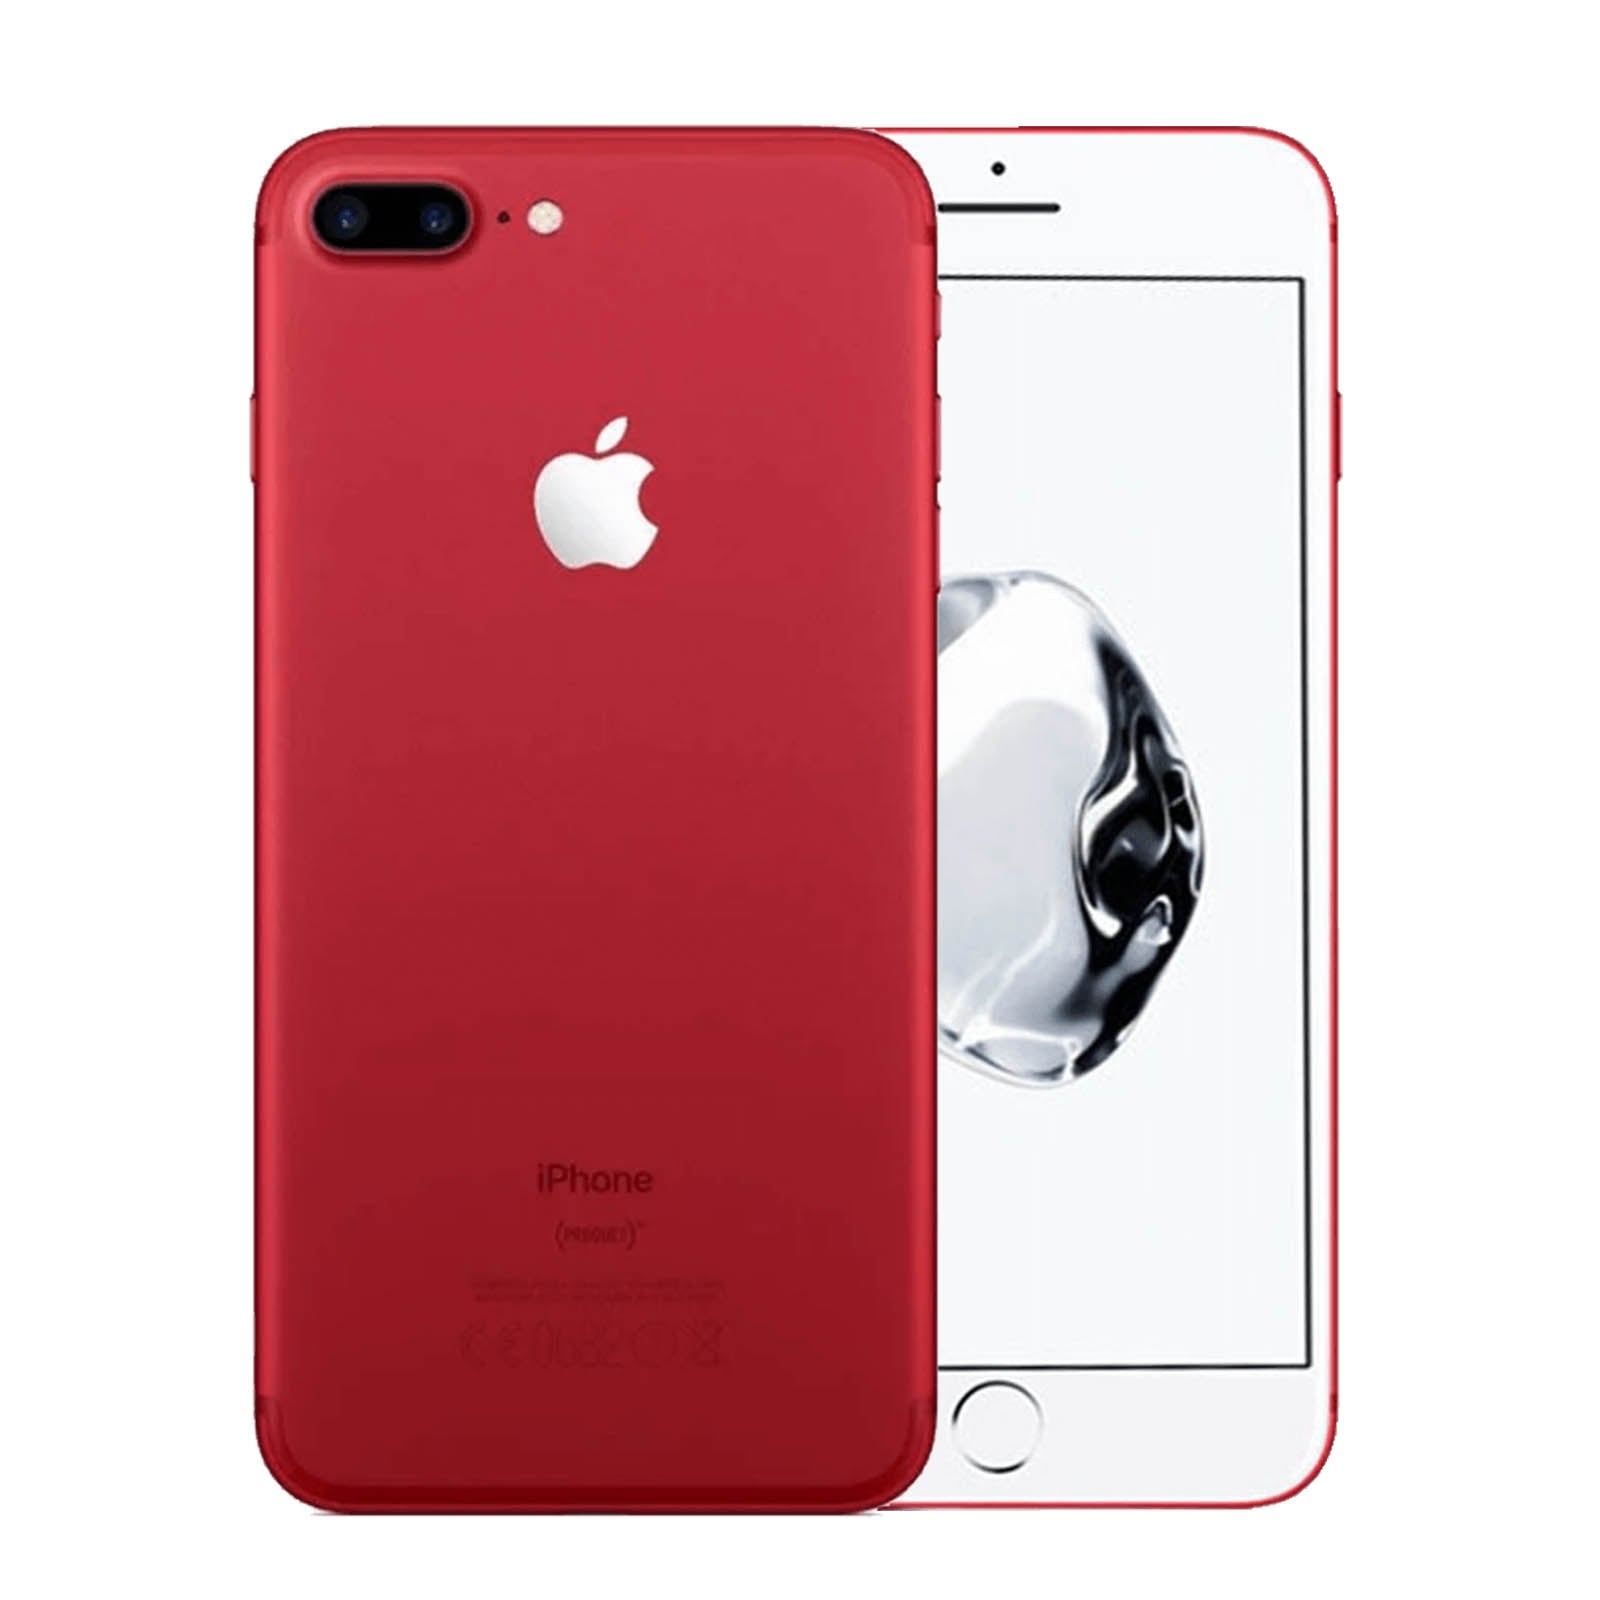 Apple iPhone 7 Plus 128GB Product Red Bueno - Desbloqueado